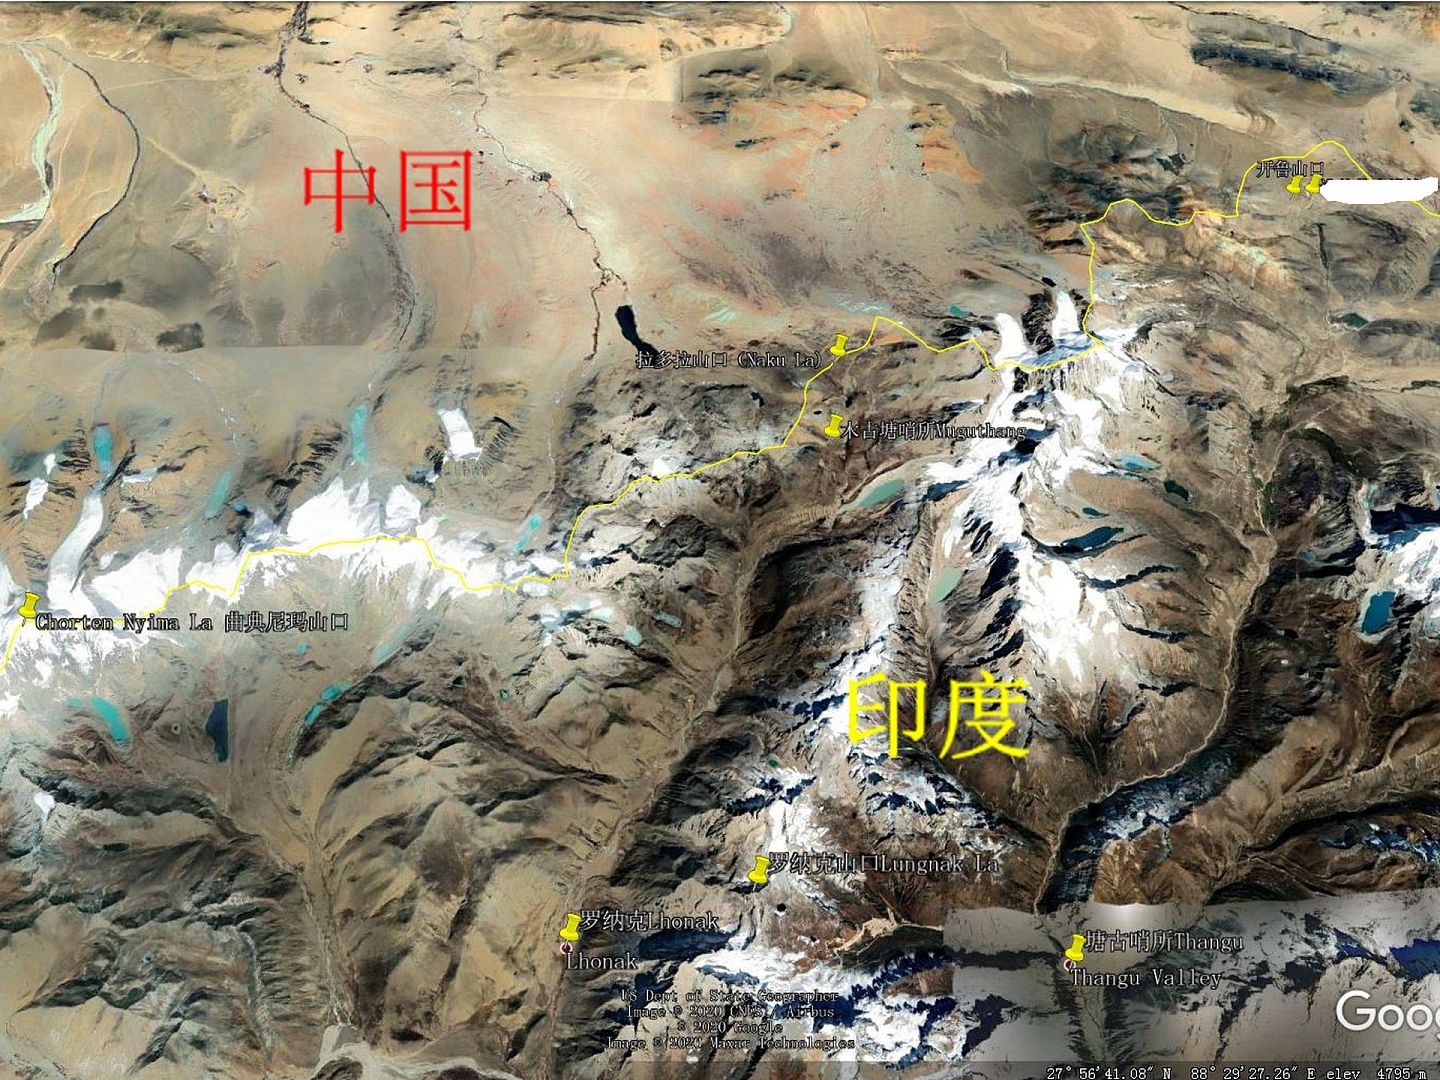 拉多拉山口附近中印态势。图中黄色线条为谷歌地图上的中印边境锡金段边界线，上为中国，下为印度，印度在拉多拉山口当面建有木古塘哨所。（谷歌地图截图）